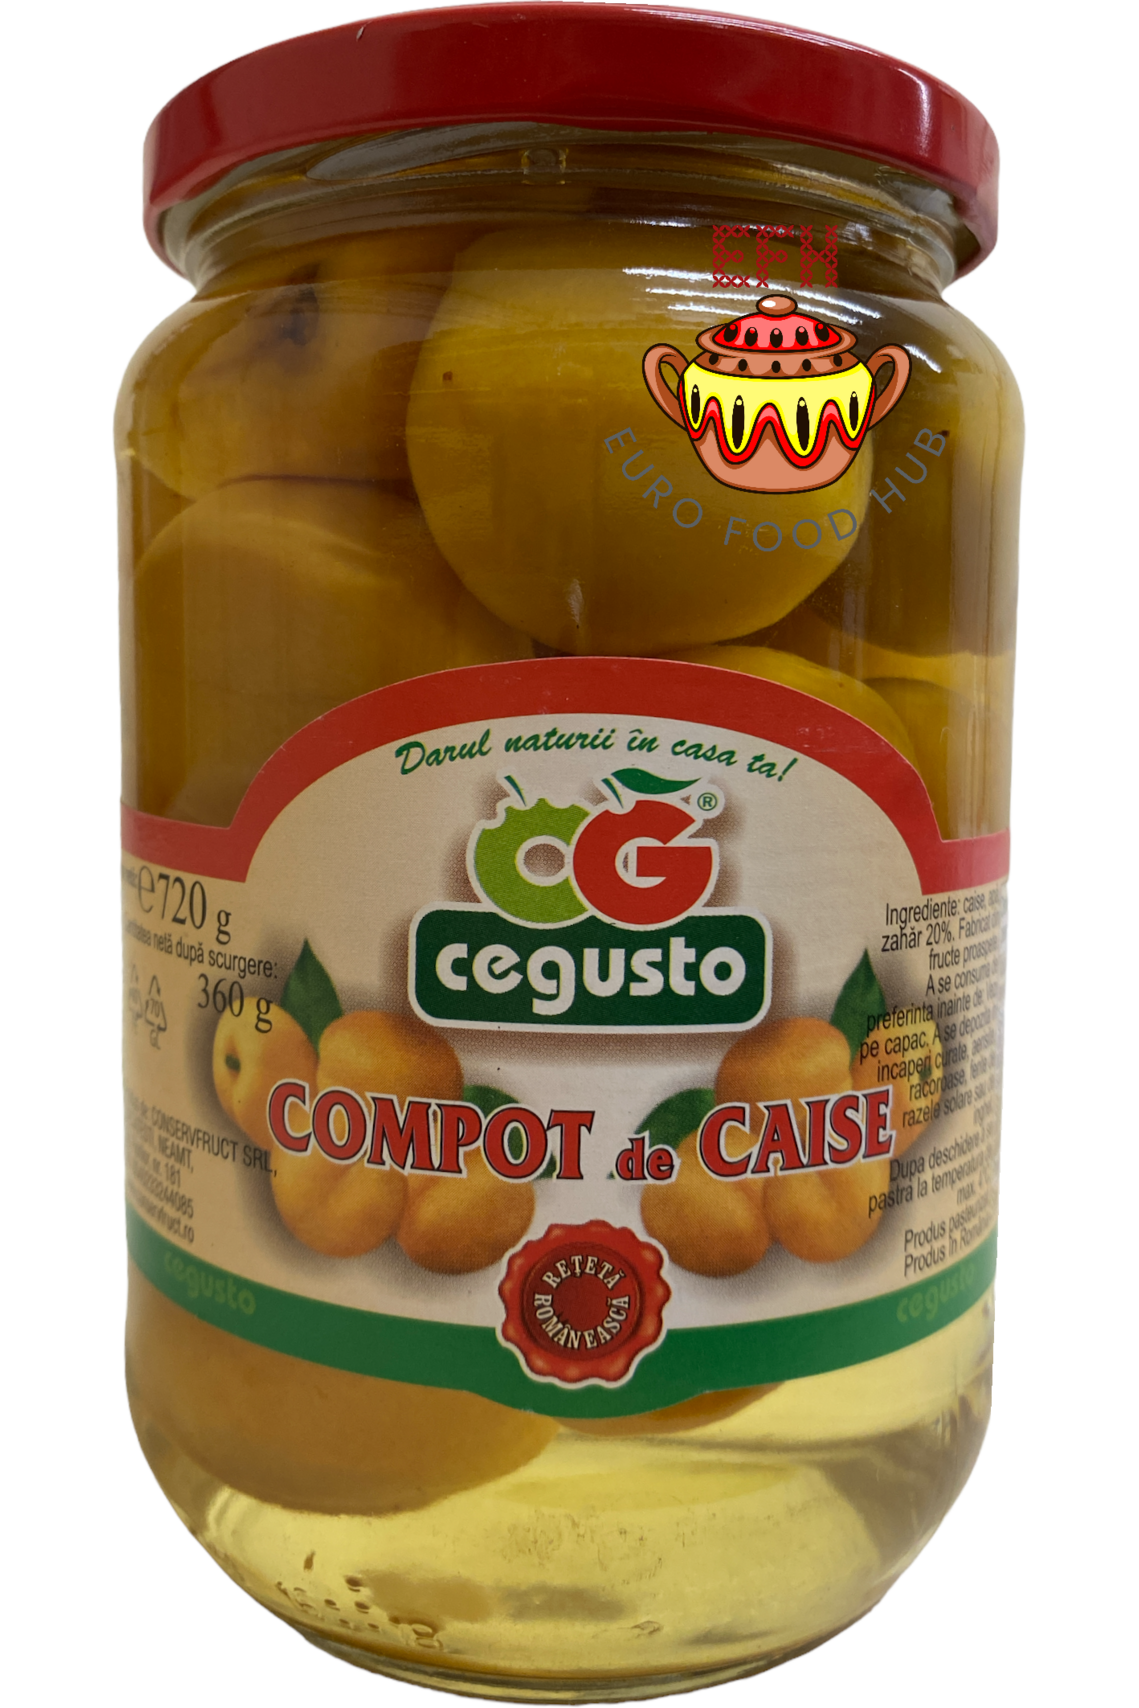 Apricot Compote - Cegusto - 720g